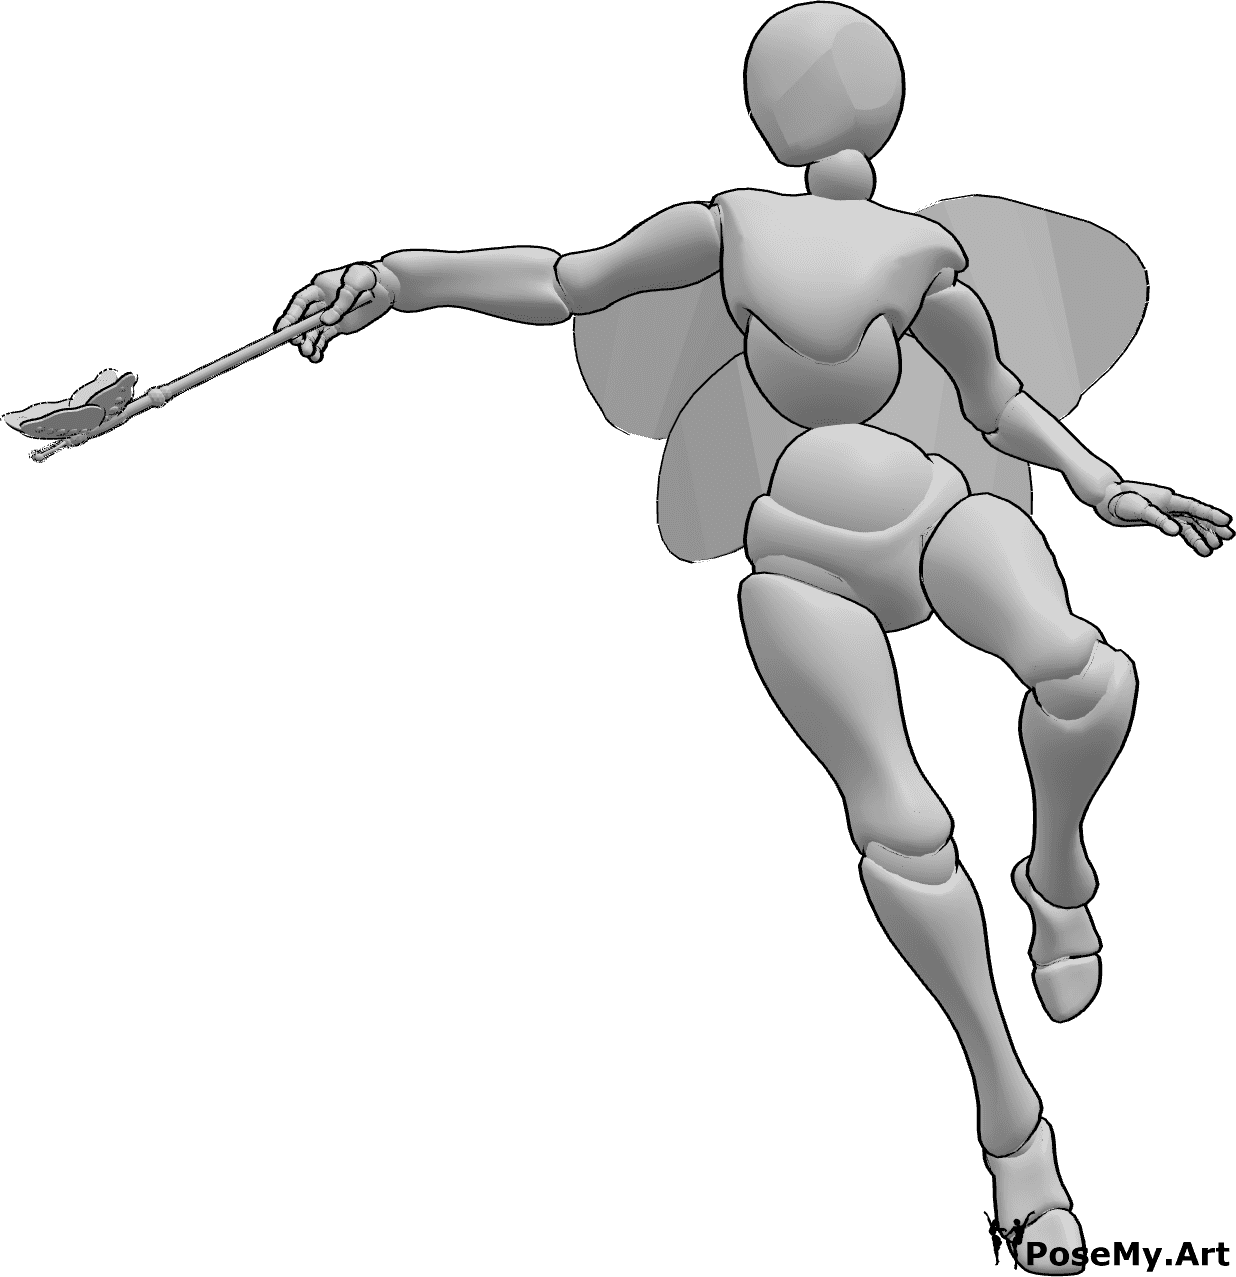 Posen-Referenz- Magische Pose der Fee - Weibliche Fee fliegt und spricht einen Zauberspruch mit ihrem Feenstab in der rechten Hand